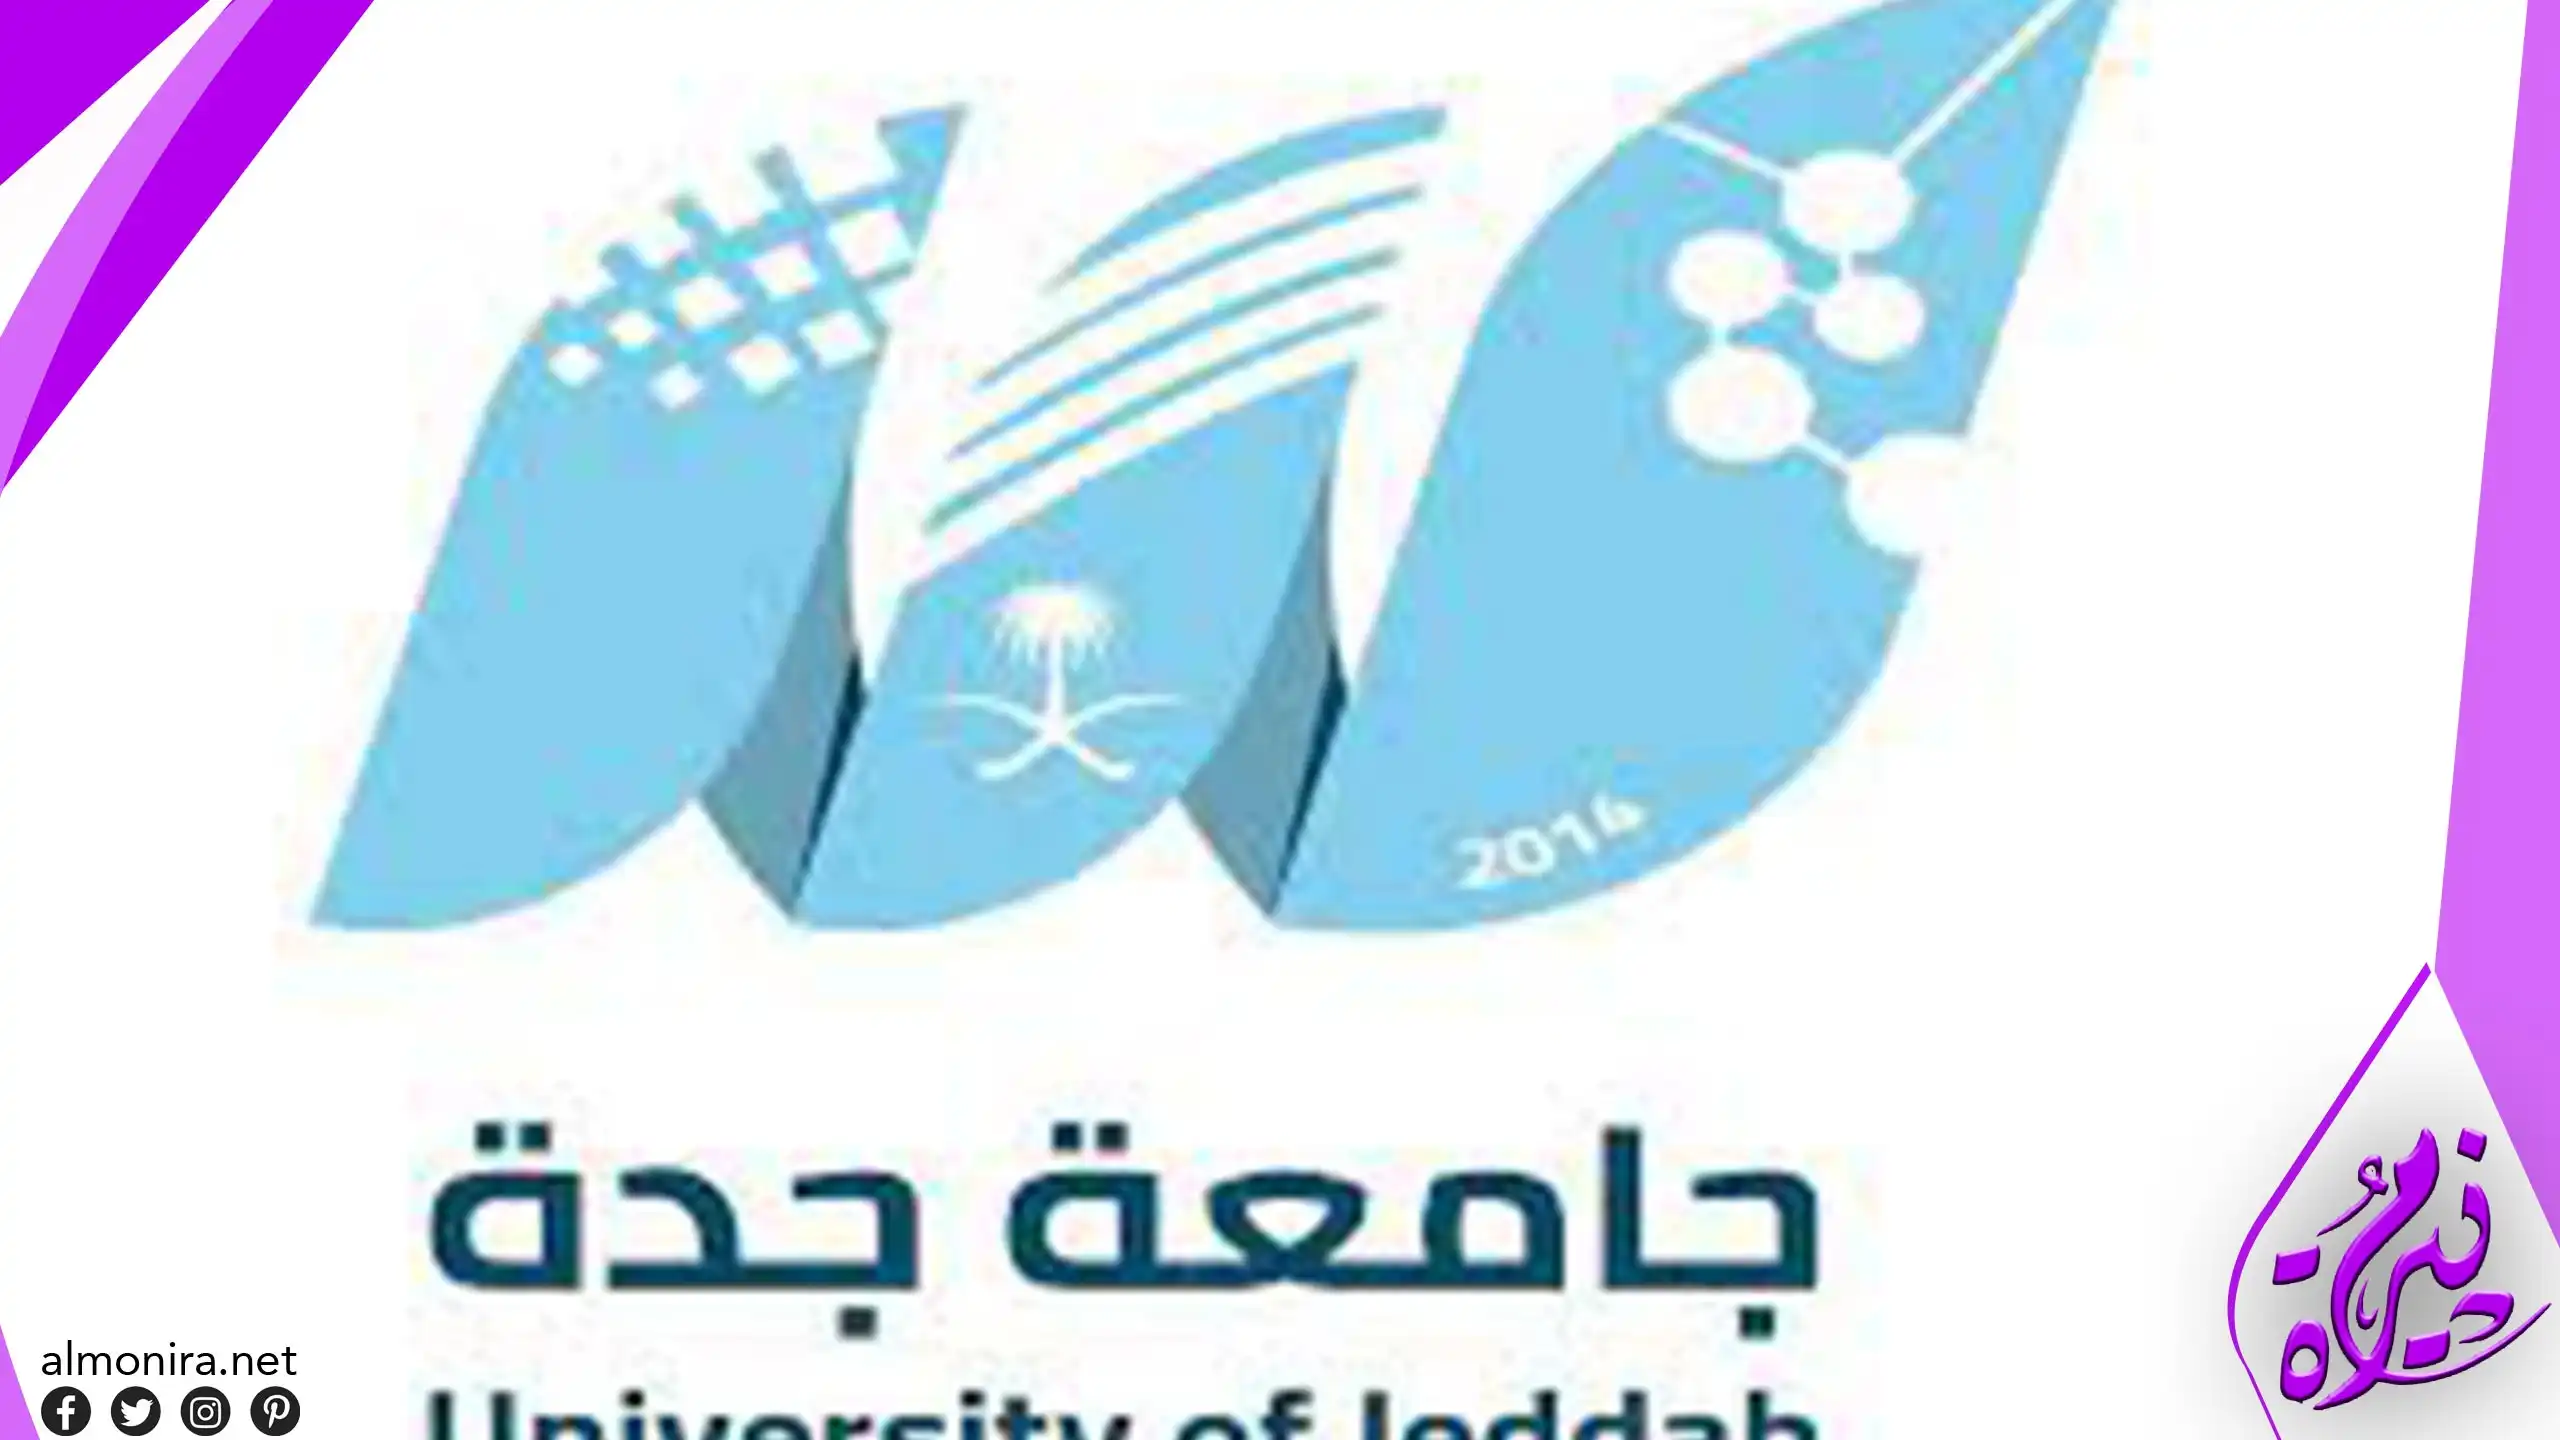 جامعة جدة تعلن عن إتاحة 13 برنامجاً للدبلوم المتوسط لعام 1445هـ